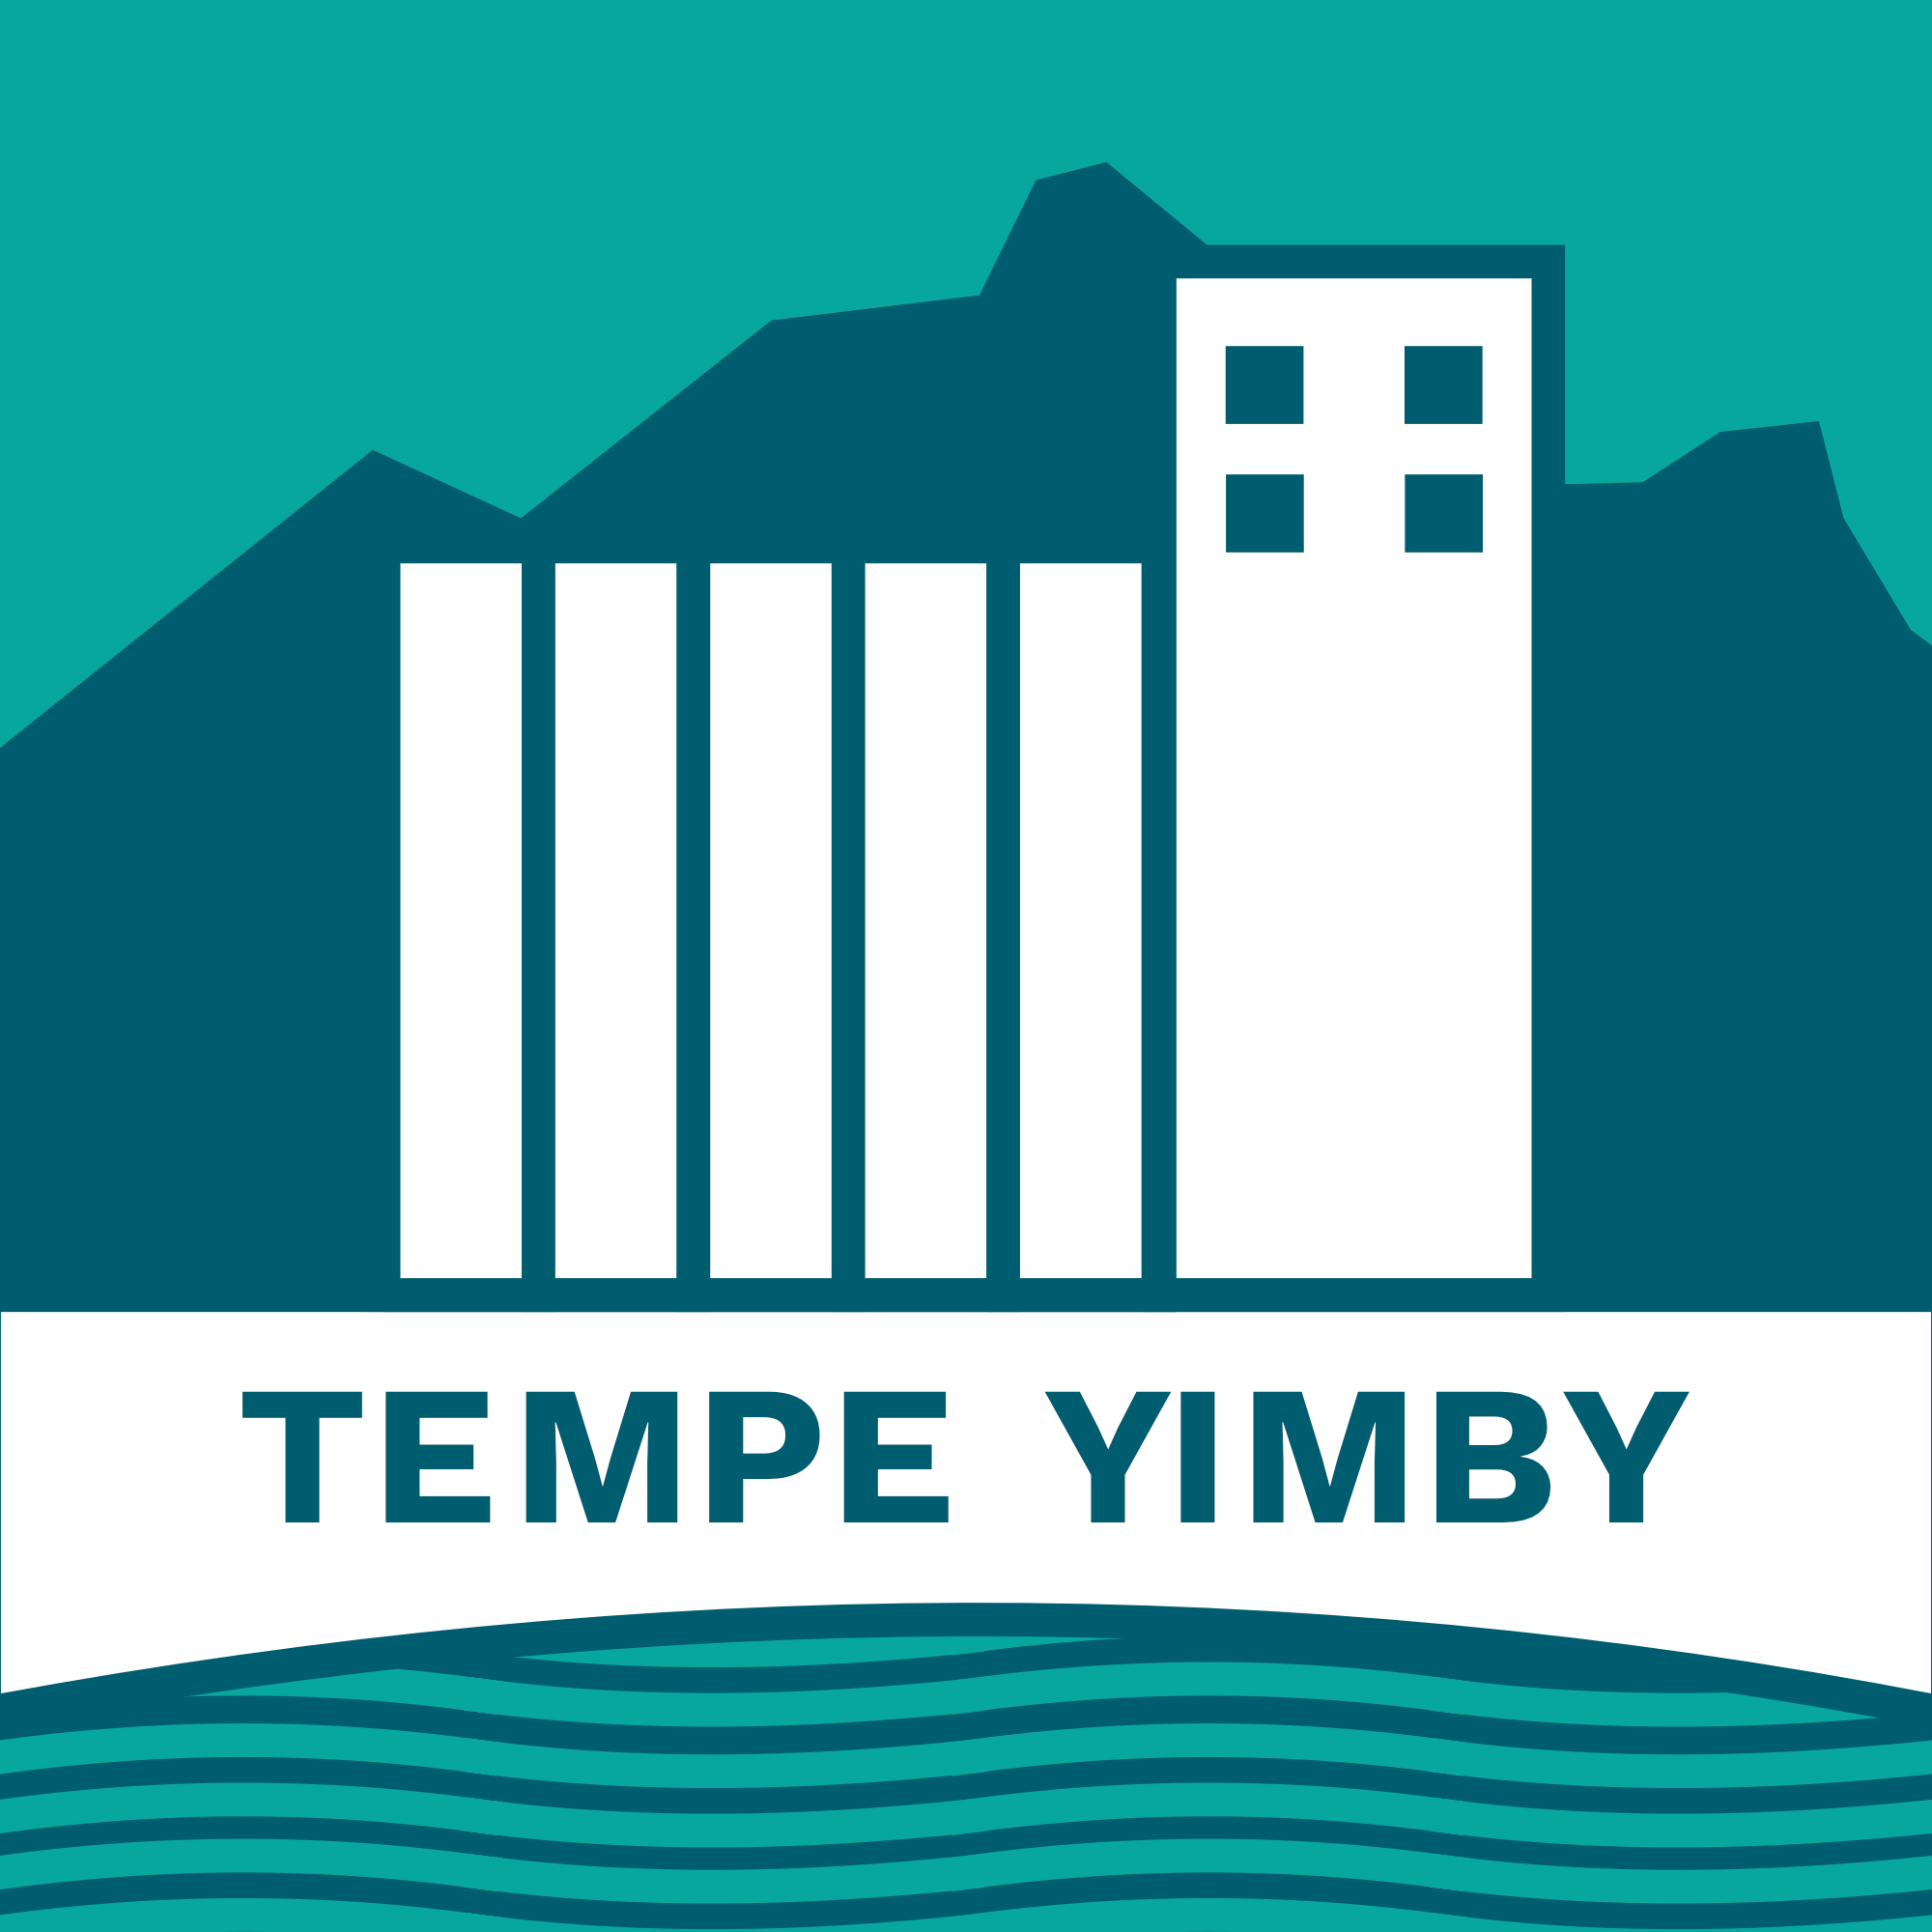 Tempe YIMBY